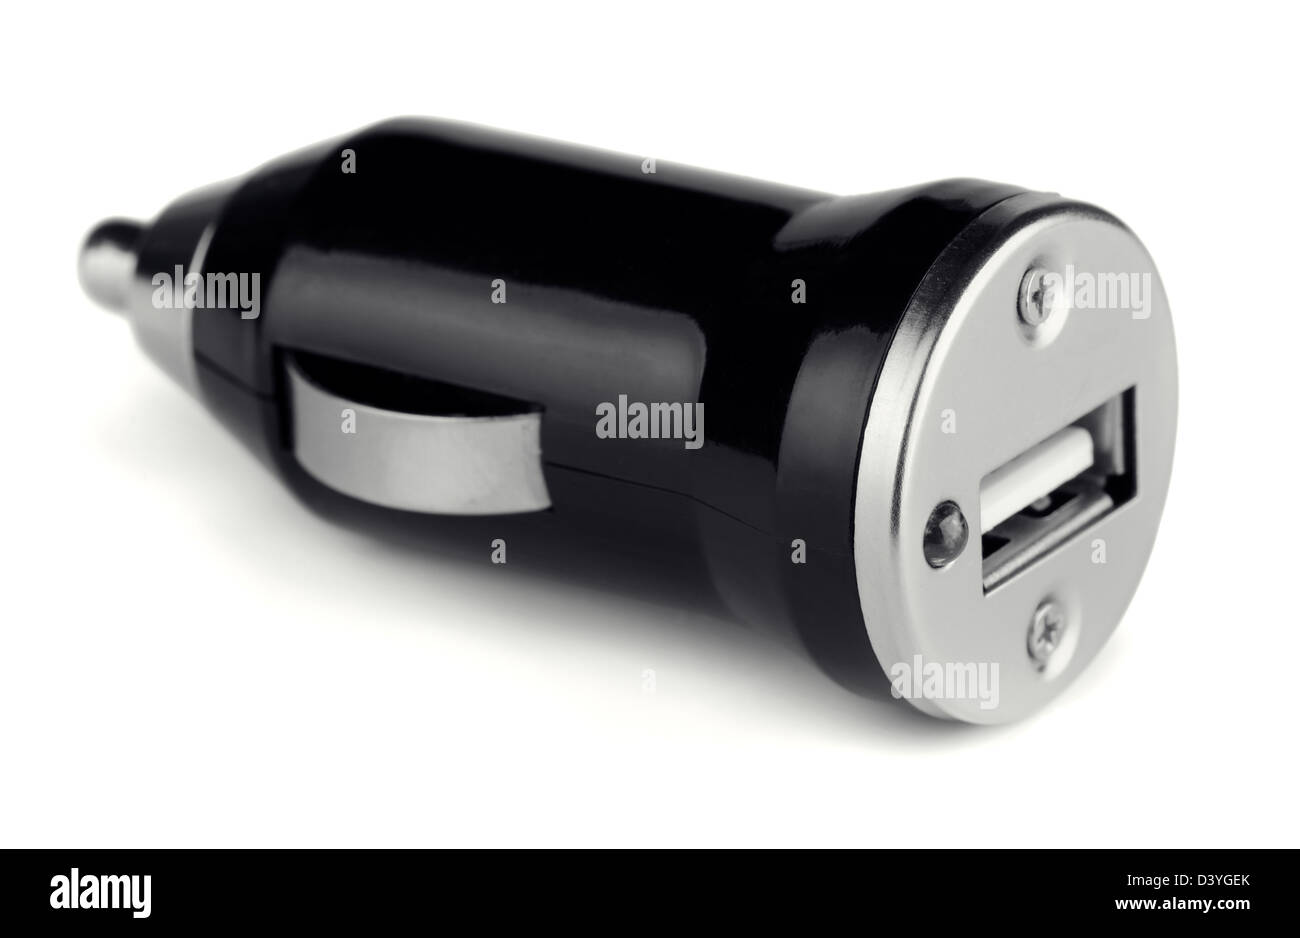 Appareil électronique USB noir chargeur voiture isolated on white Banque D'Images